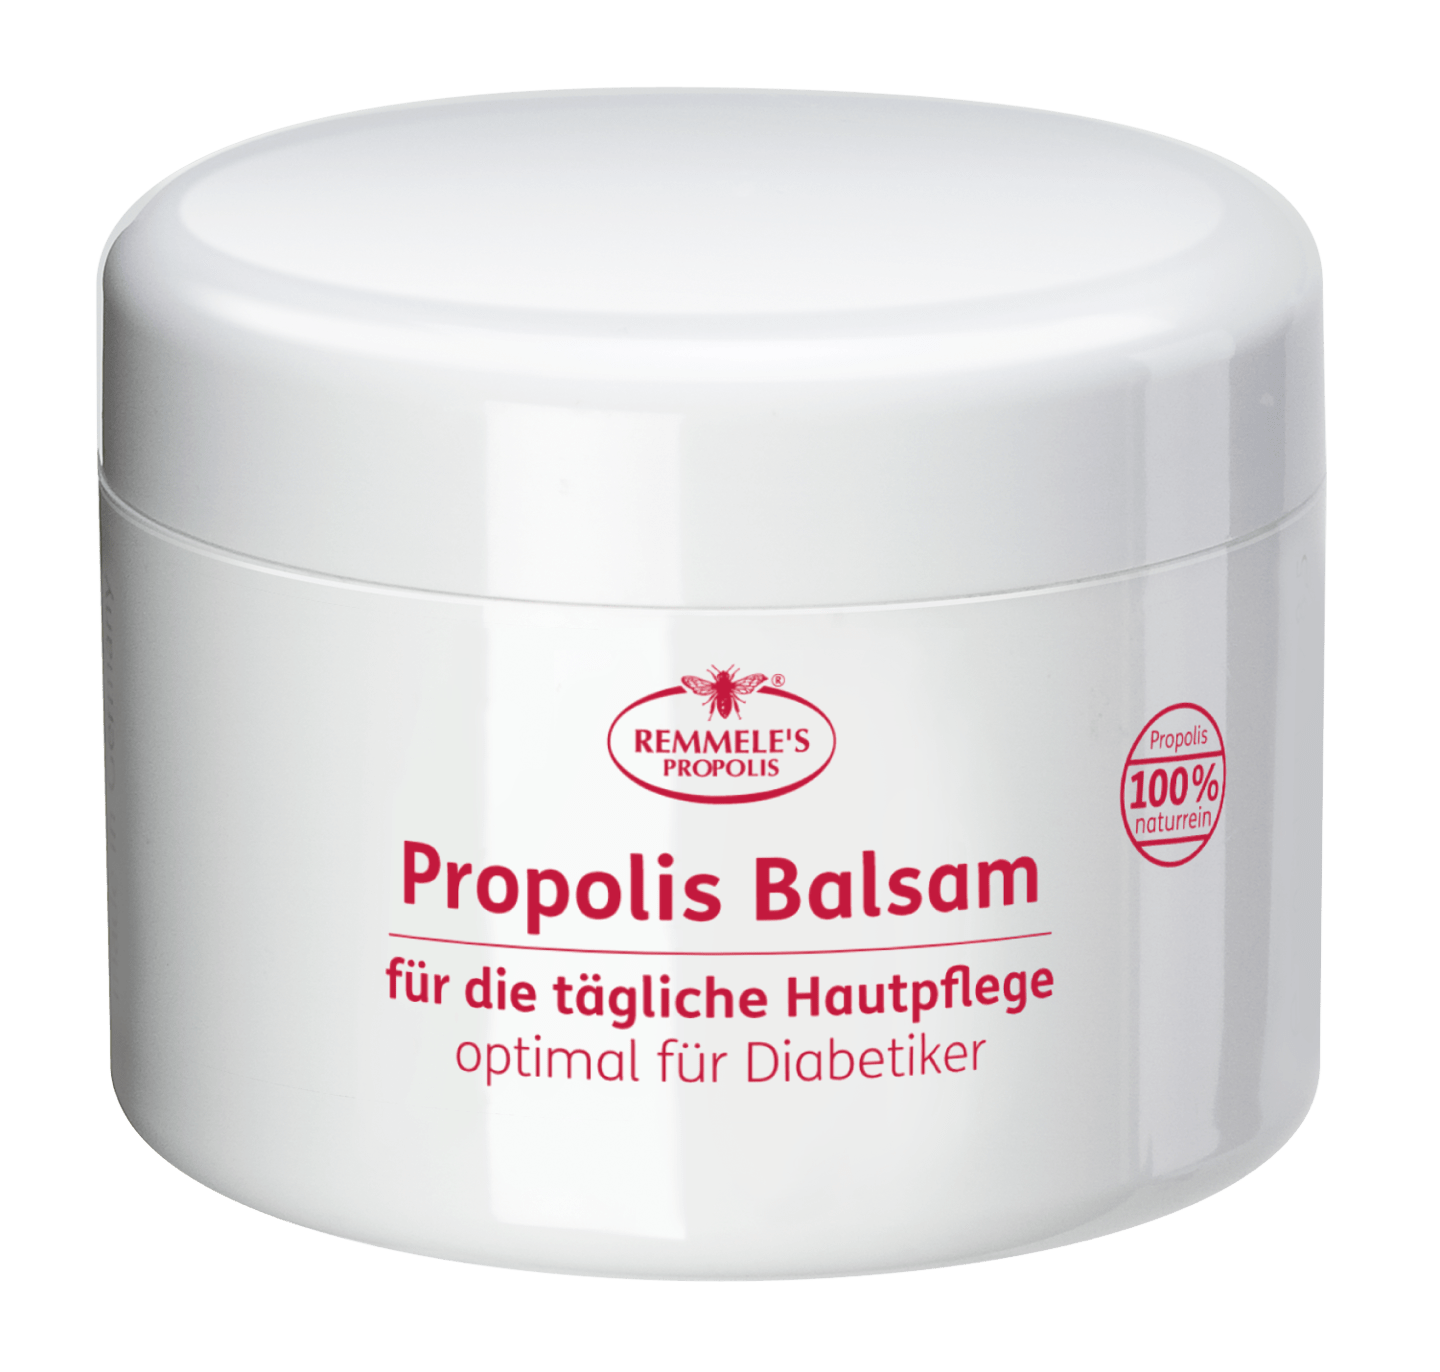 Remmele's Propolis - Propolis Balsam, 250 ml